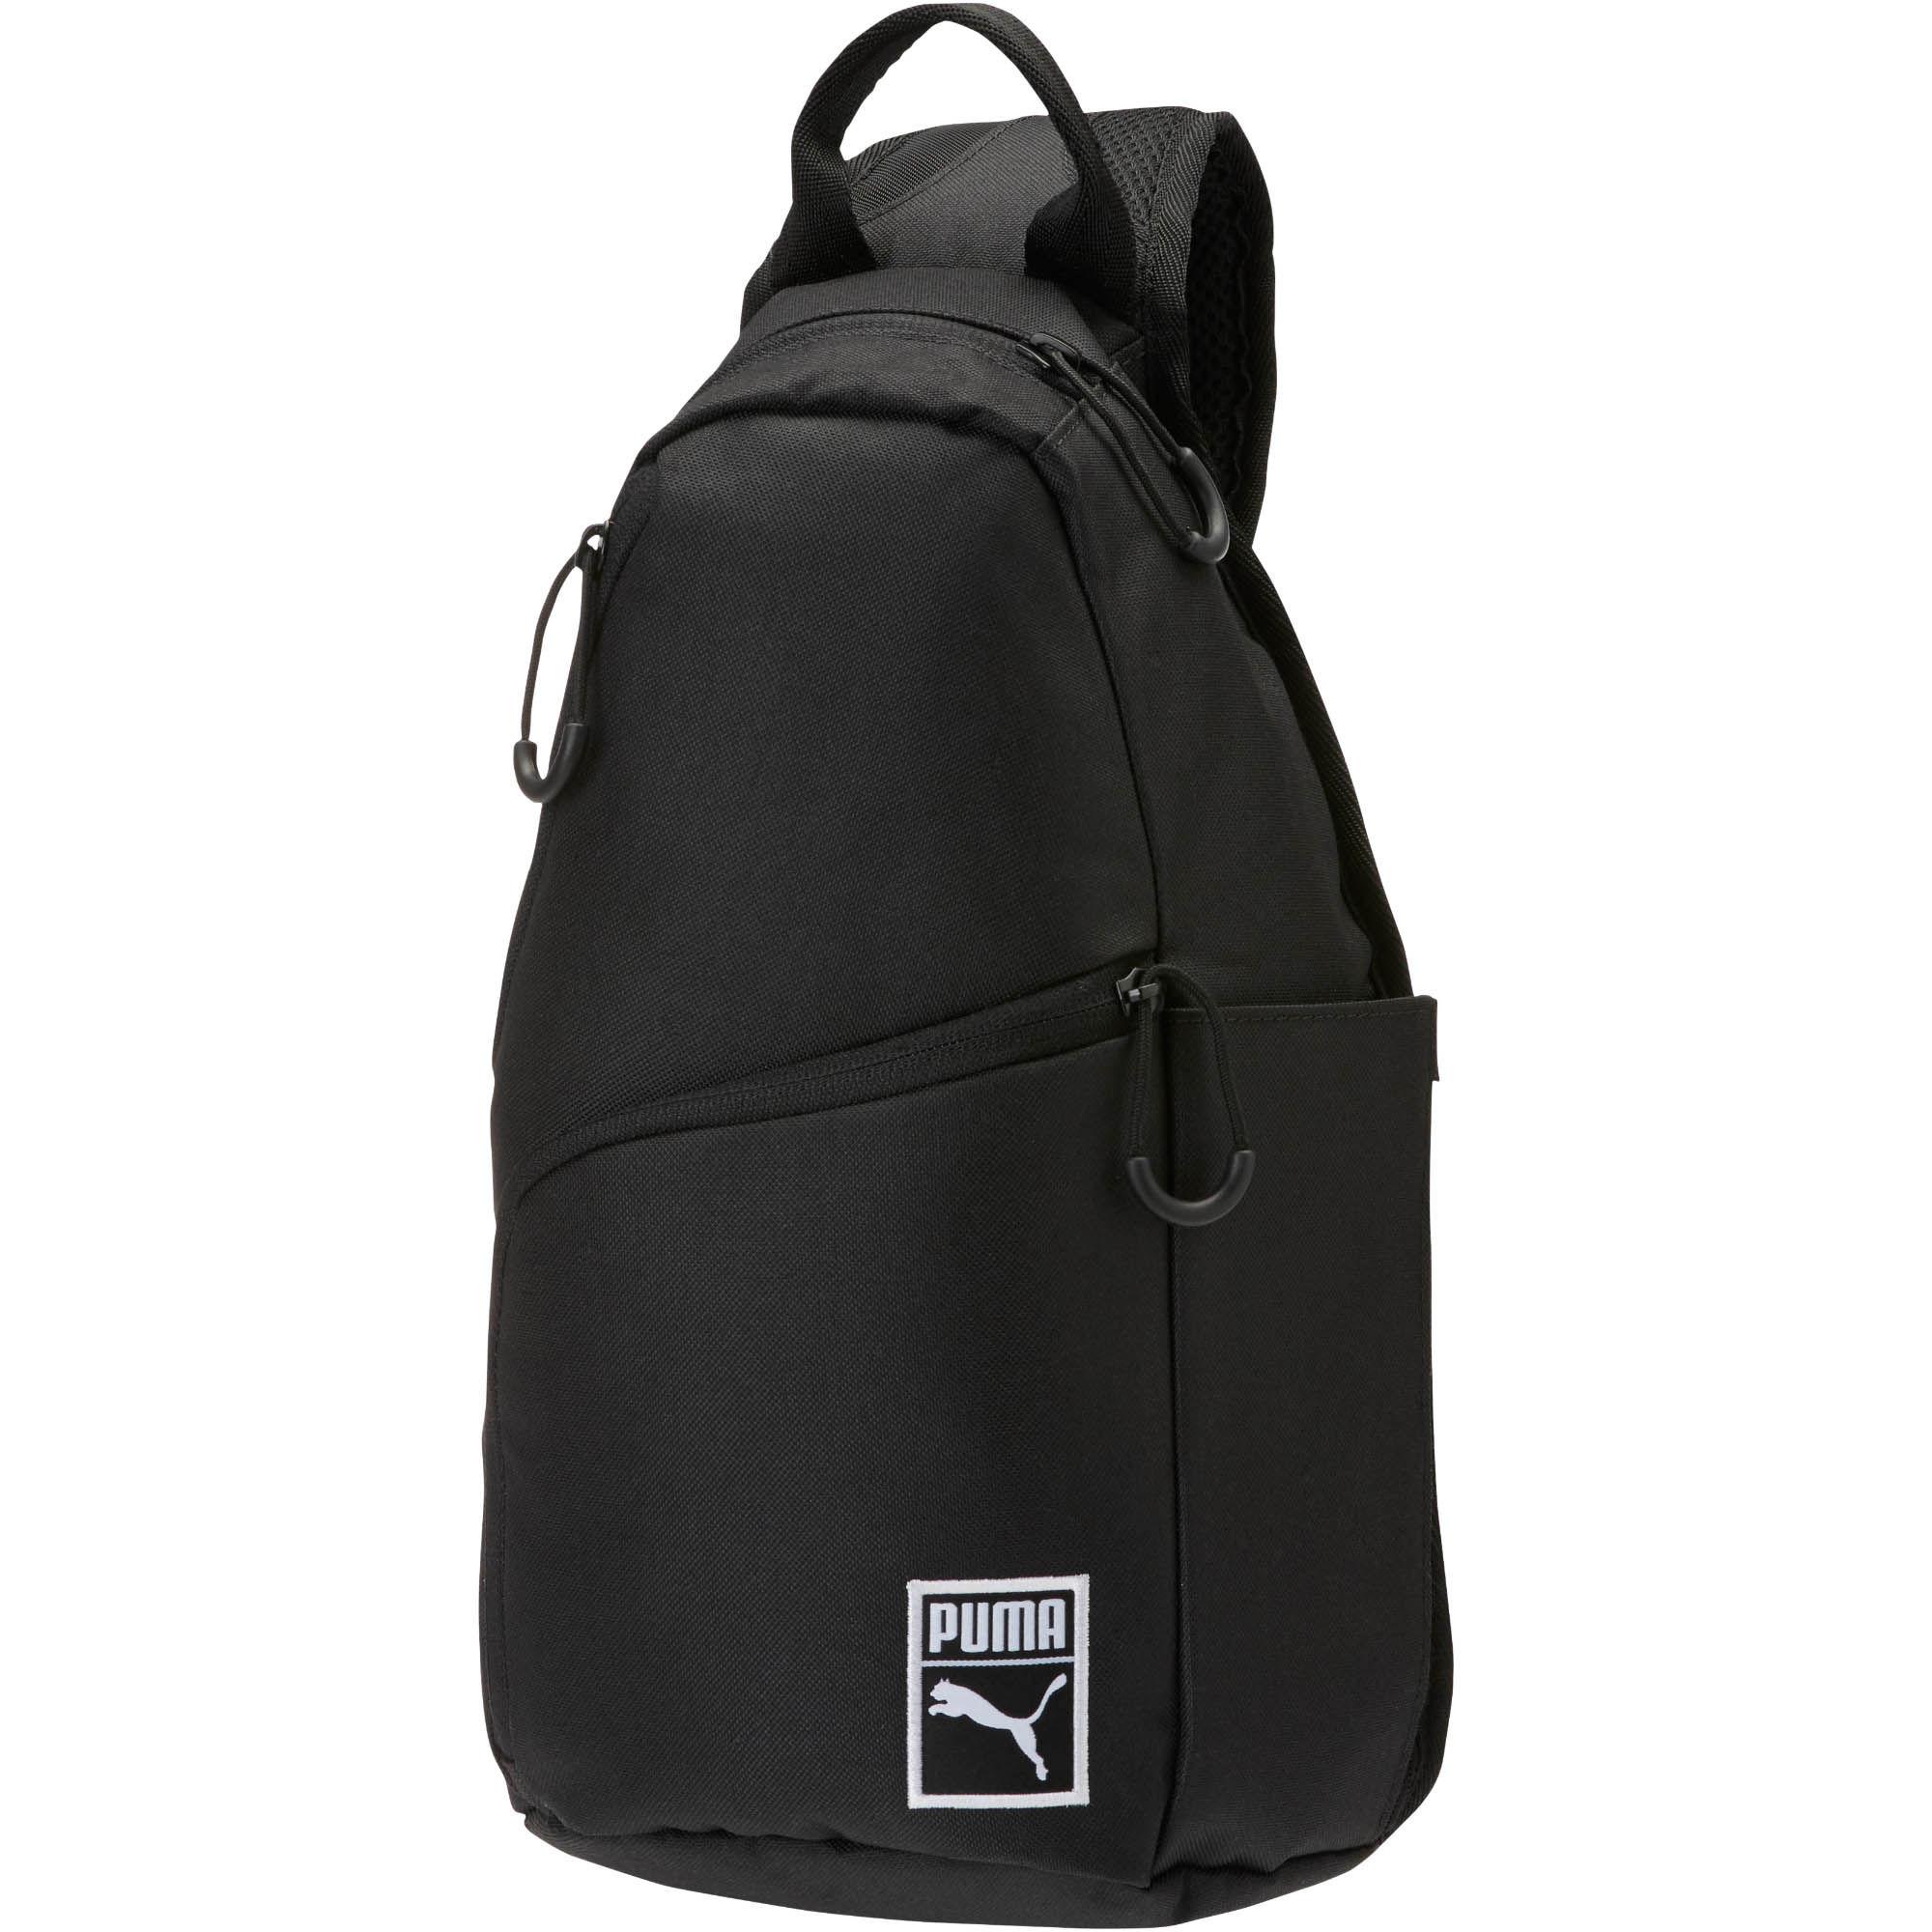 puma one strap backpack